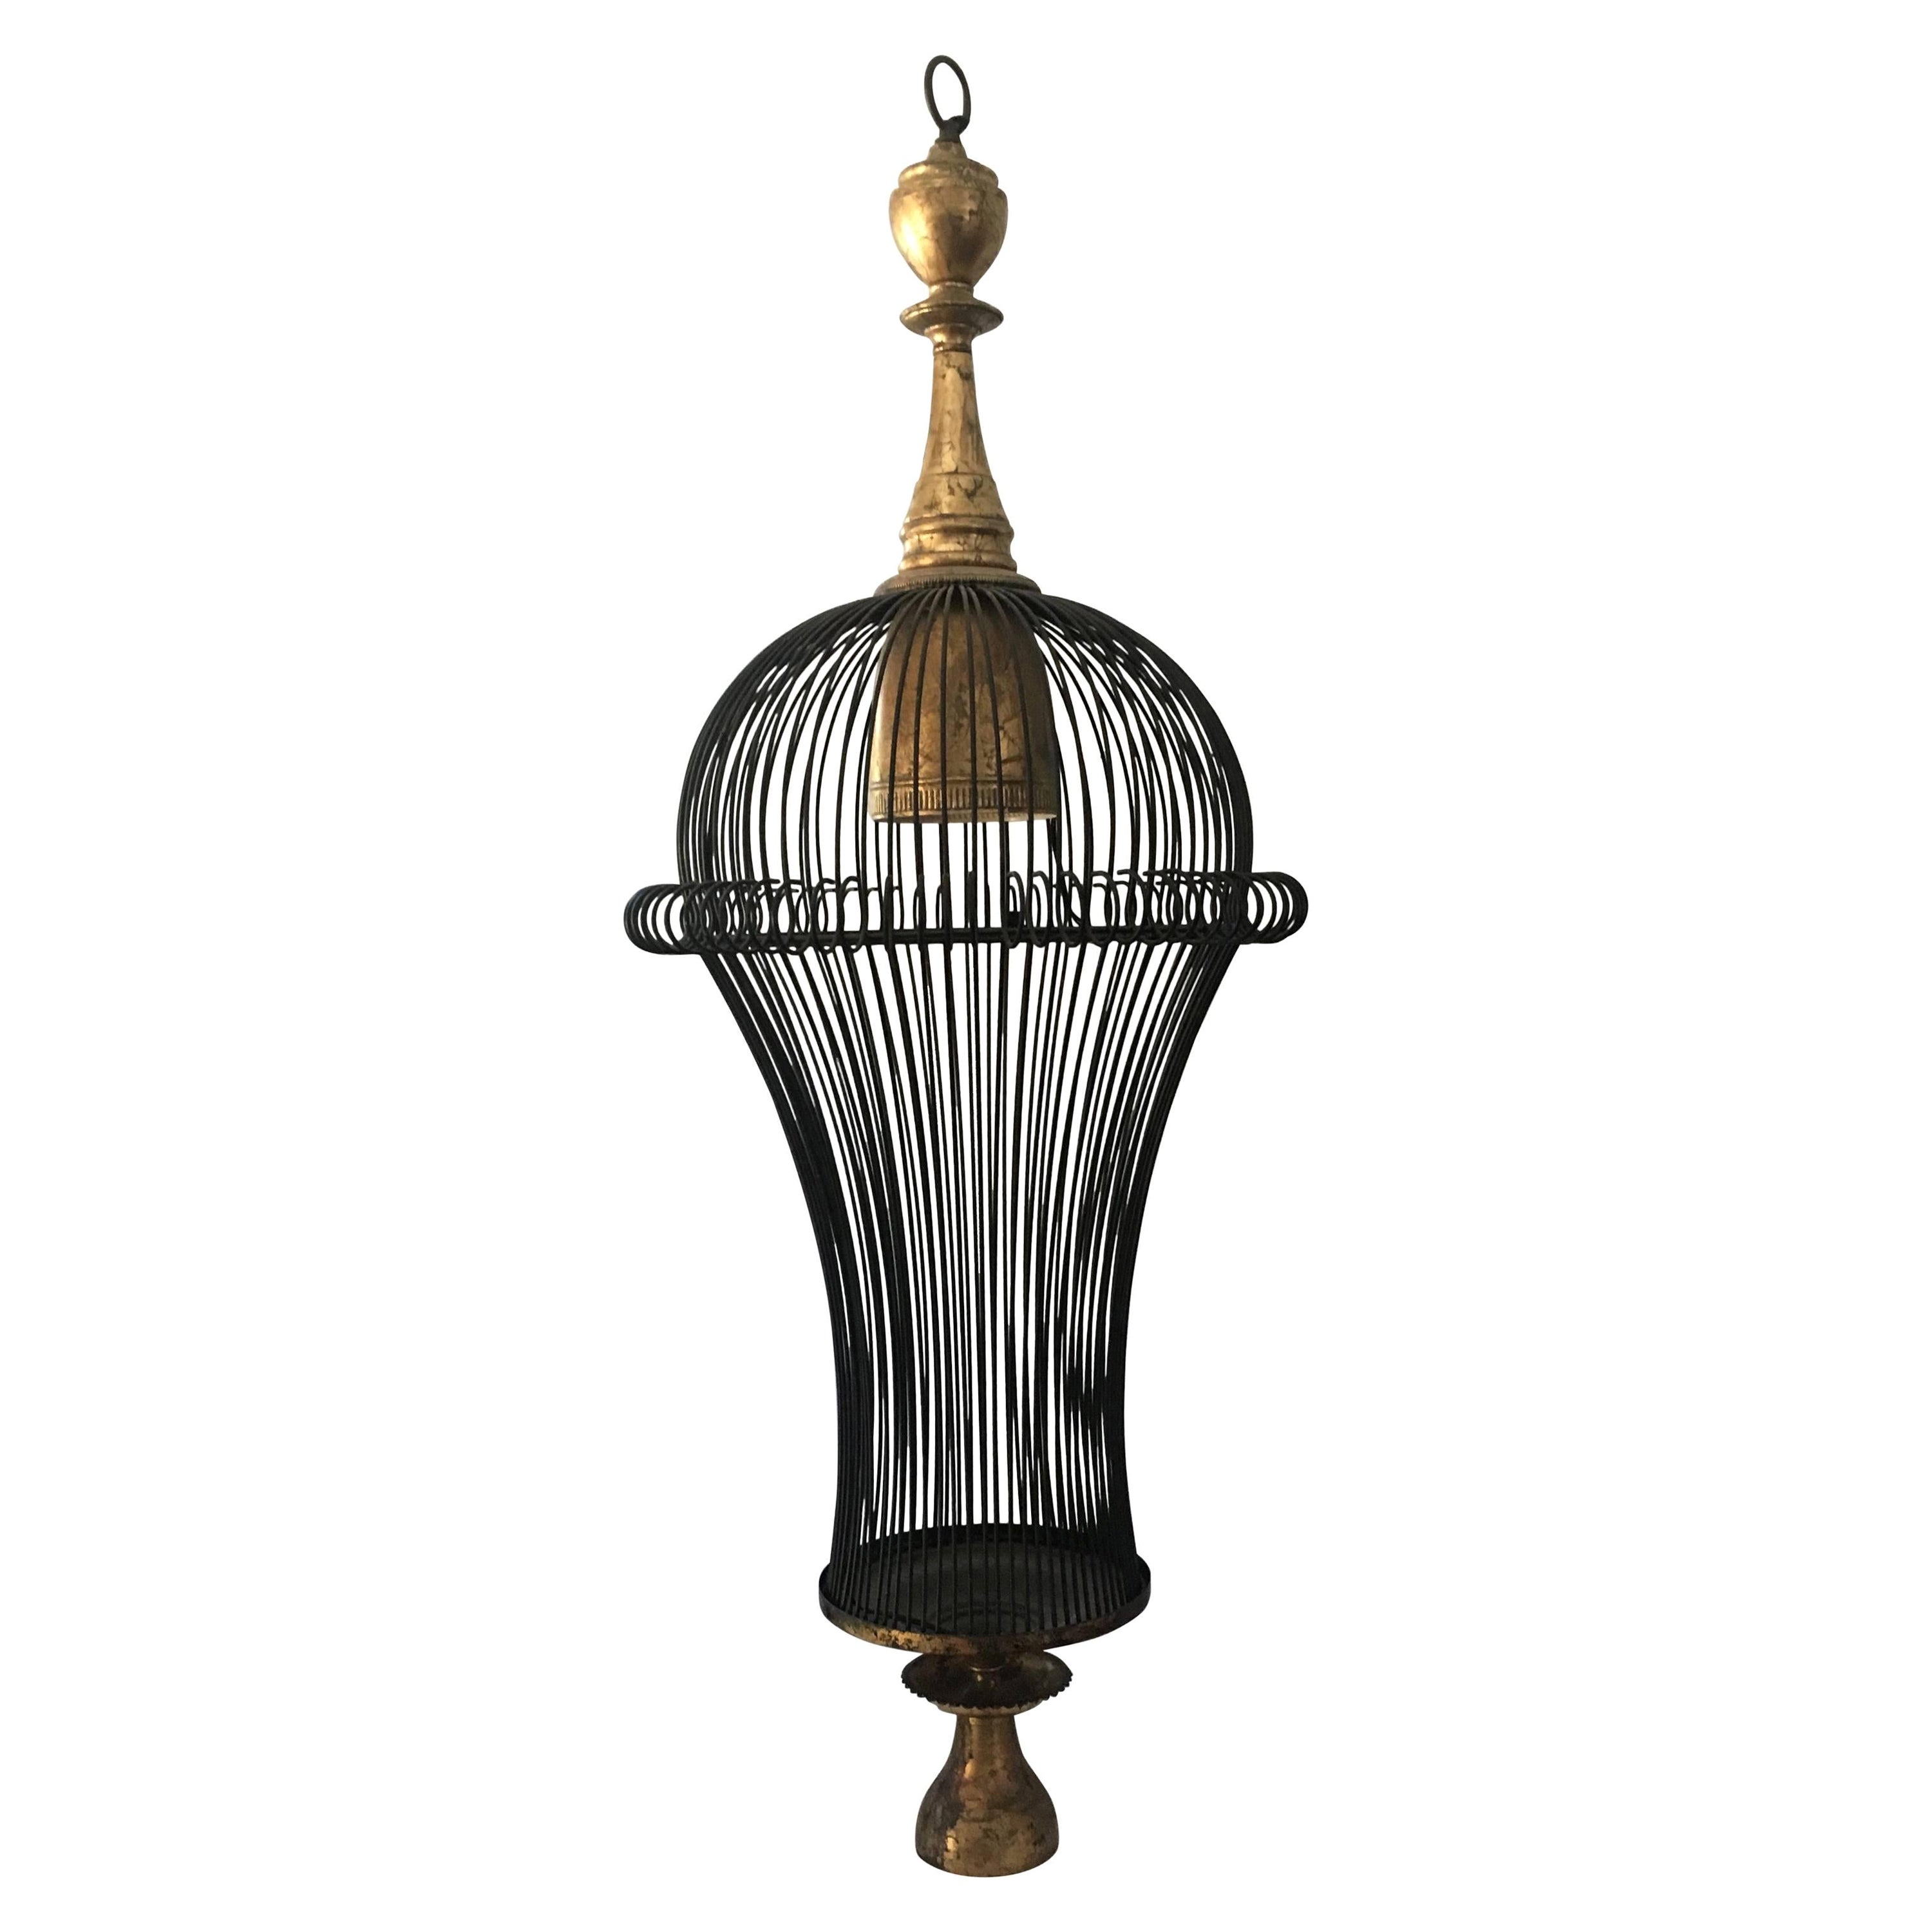 Magnifique lustre moderne de style cage avec détails en métal doré